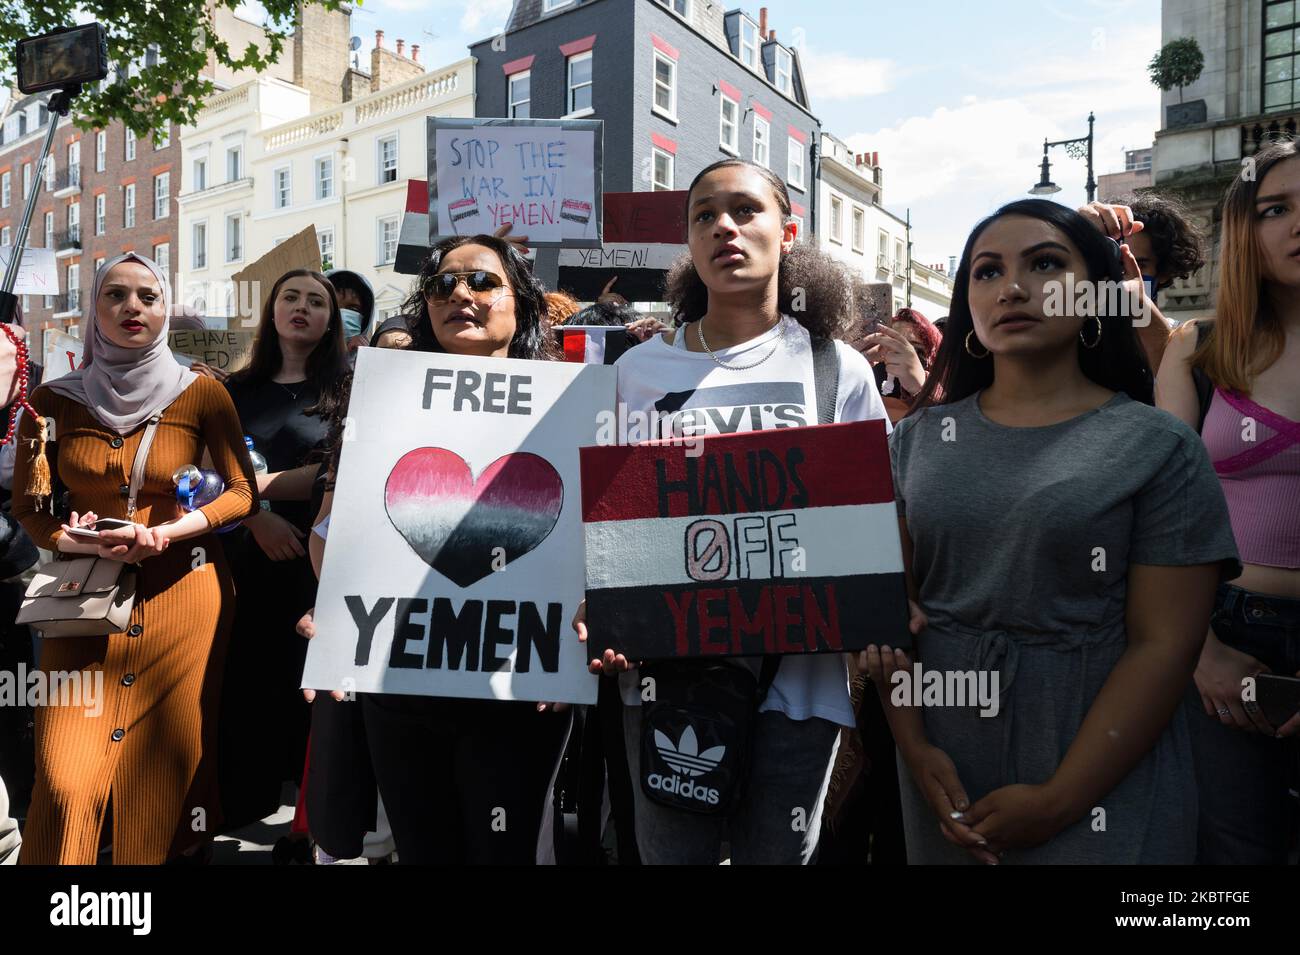 Demonstranten versammeln sich vor der Botschaft Saudi-Arabiens im Zentrum von London, um am 12. Juli 2020 in London, England, gegen den anhaltenden Konflikt im Jemen zu protestieren. Das Vereinigte Königreich wird die Waffenverkäufe an Saudi-Arabien wieder aufnehmen, die im vergangenen Jahr nach einer Klage von Aktivisten ausgesetzt wurden, trotz der Befürchtungen, dass sie gegen Zivilisten im Jemen und damit gegen das humanitäre Völkerrecht eingesetzt werden könnten. (Foto von Wiktor Szymanowicz/NurPhoto) Stockfoto